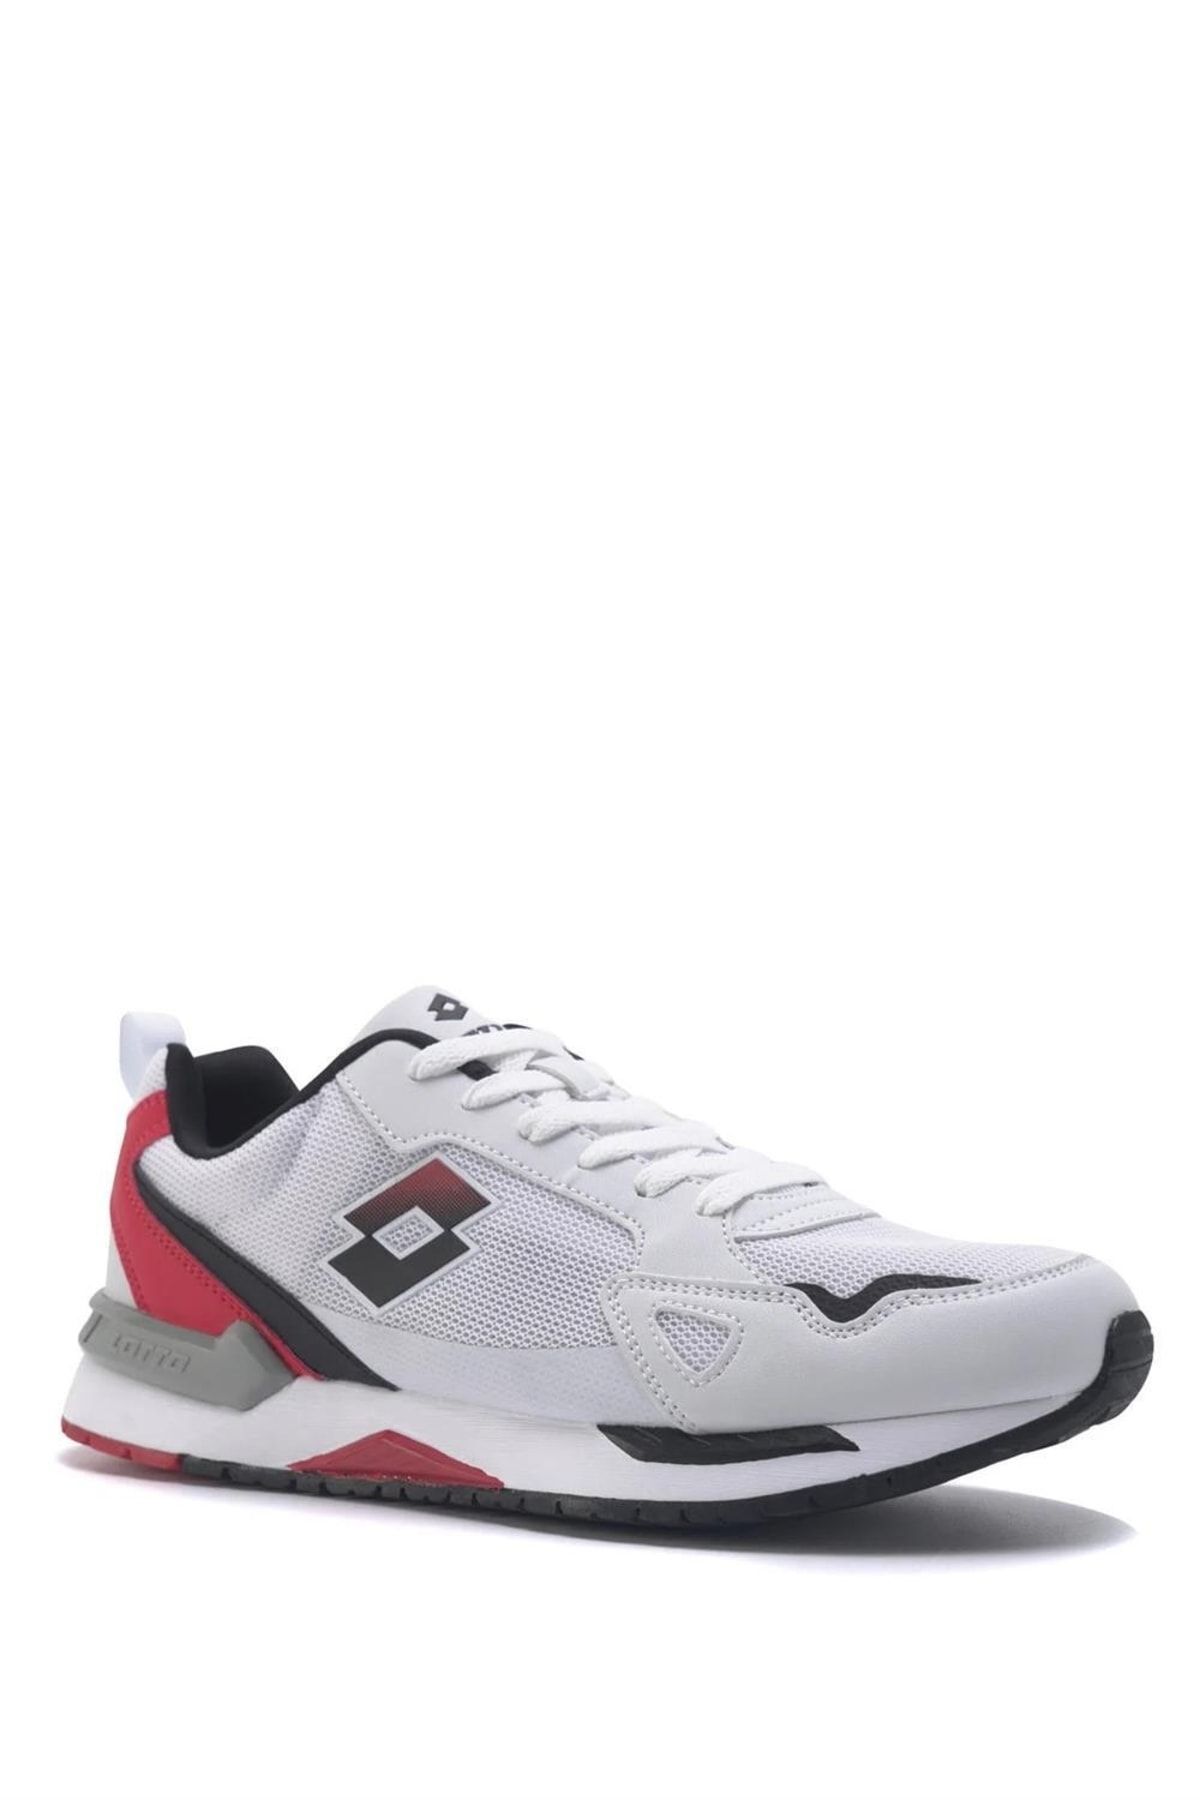 Lotto Brıghton 3fx Beyaz Erkek Yürüyüş & Koşu Ayakkabısı